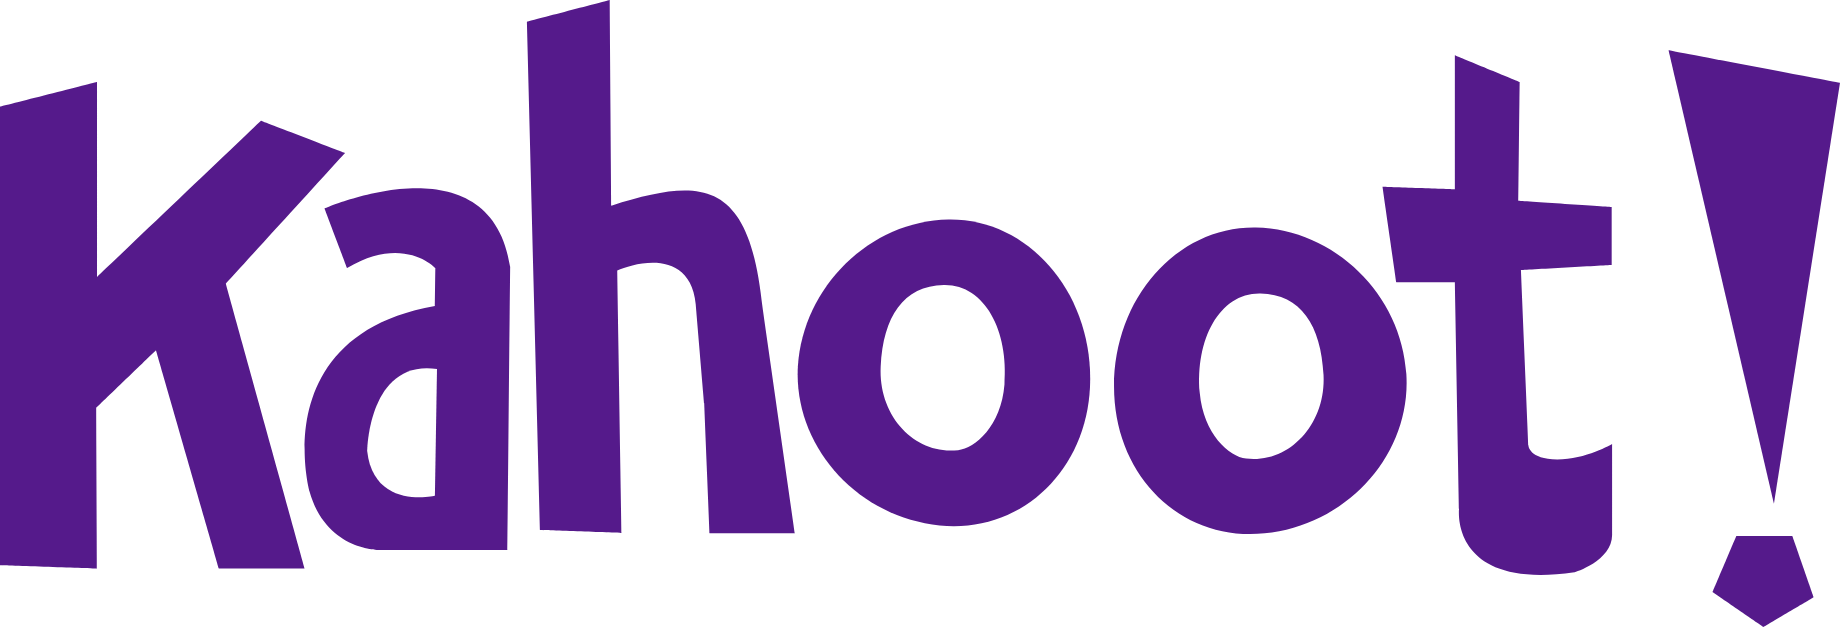 Kahoot!
 logo large (transparent PNG)